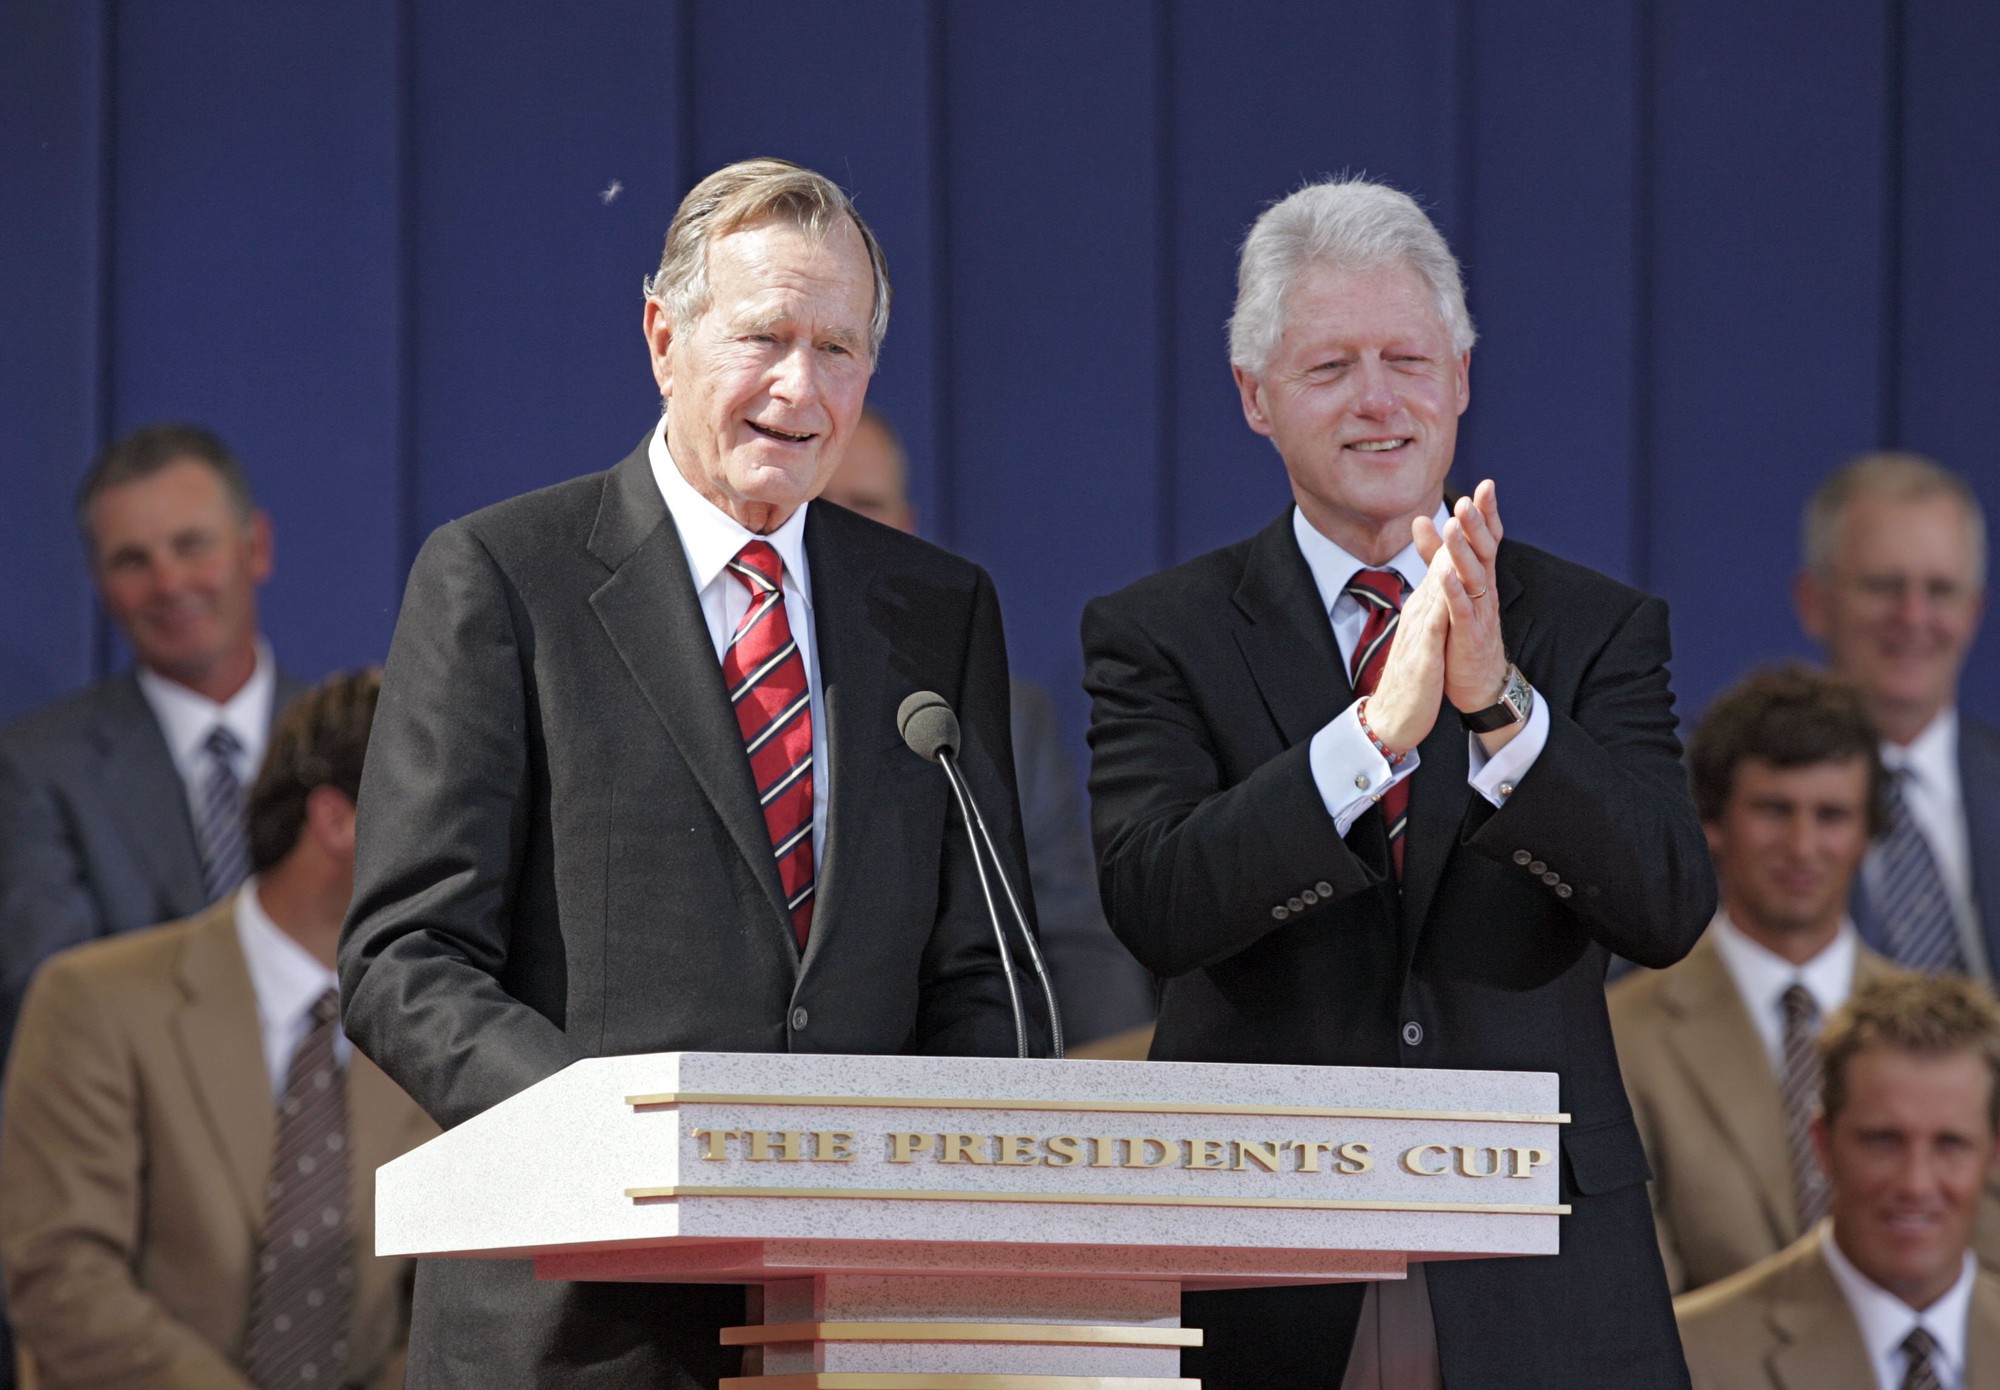 Chỉ làm tổng thống một nhiệm kỳ duy nhất nhưng ông Bush cha giúp định hình nước Mỹ suốt nhiều thập kỷ - Ảnh 4.